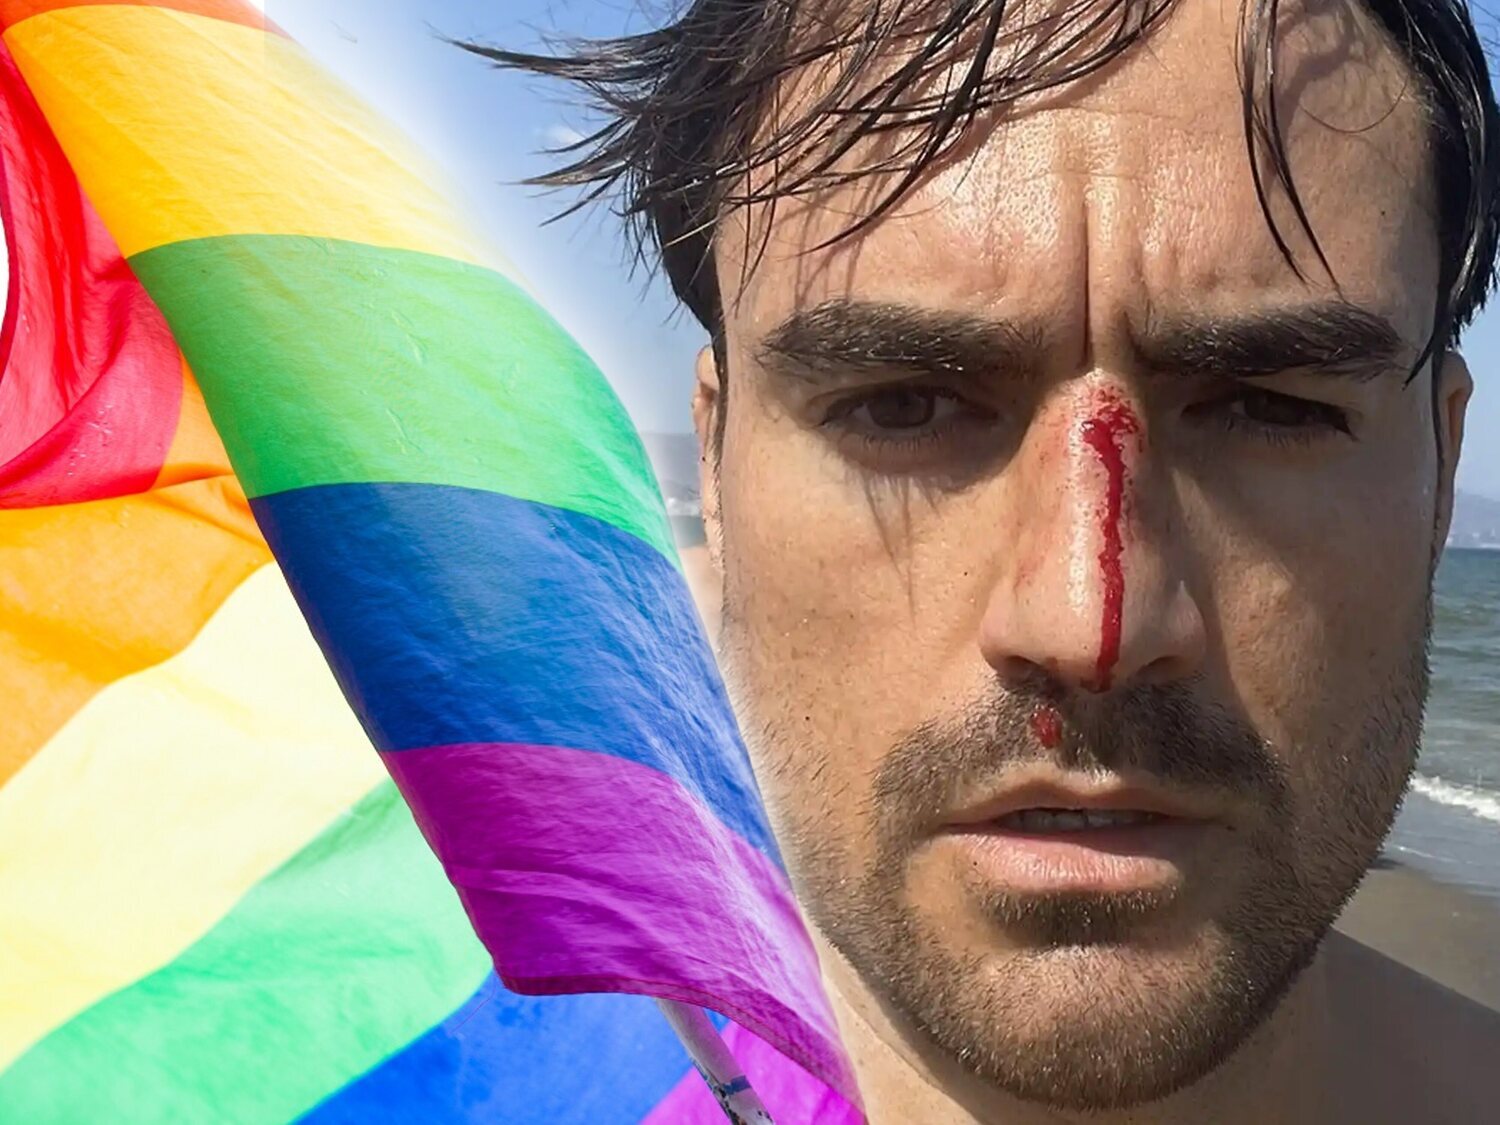 Agresión homófoba en una playa de Málaga: le da cabezazo al grito de "maricón"